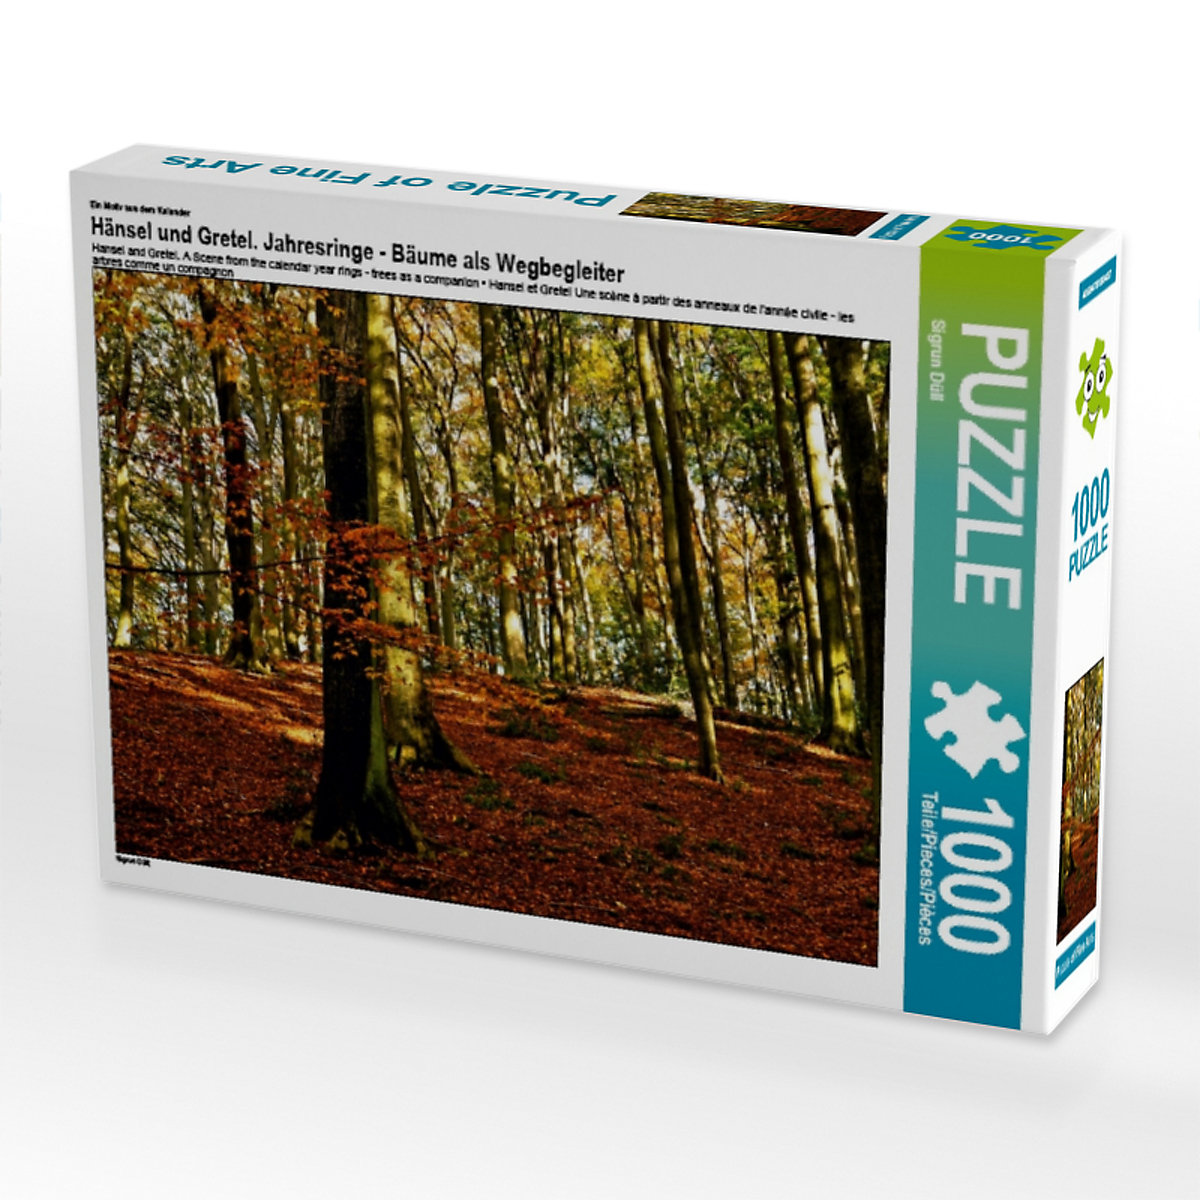 CALVENDO® Puzzle CALVENDO Puzzle Hänsel und Gretel. Ein Motiv aus dem Kalender Jahresringe Bäume als Wegbegleiter 1000 Teile Foto-Puzzle für glückliche Stunden